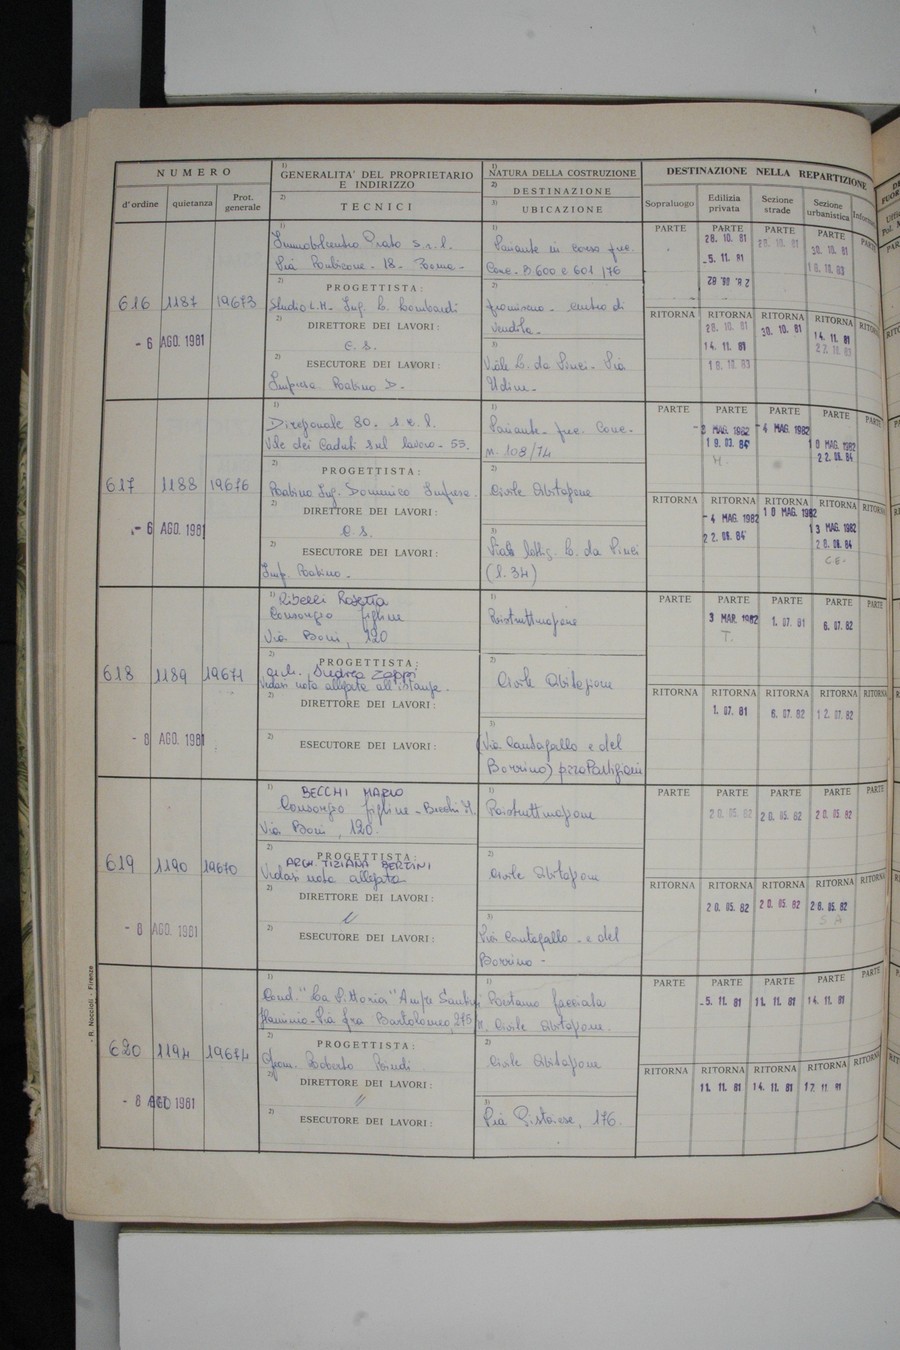 Foto del lato sinistro del registro con i dati della pratica 616/1981